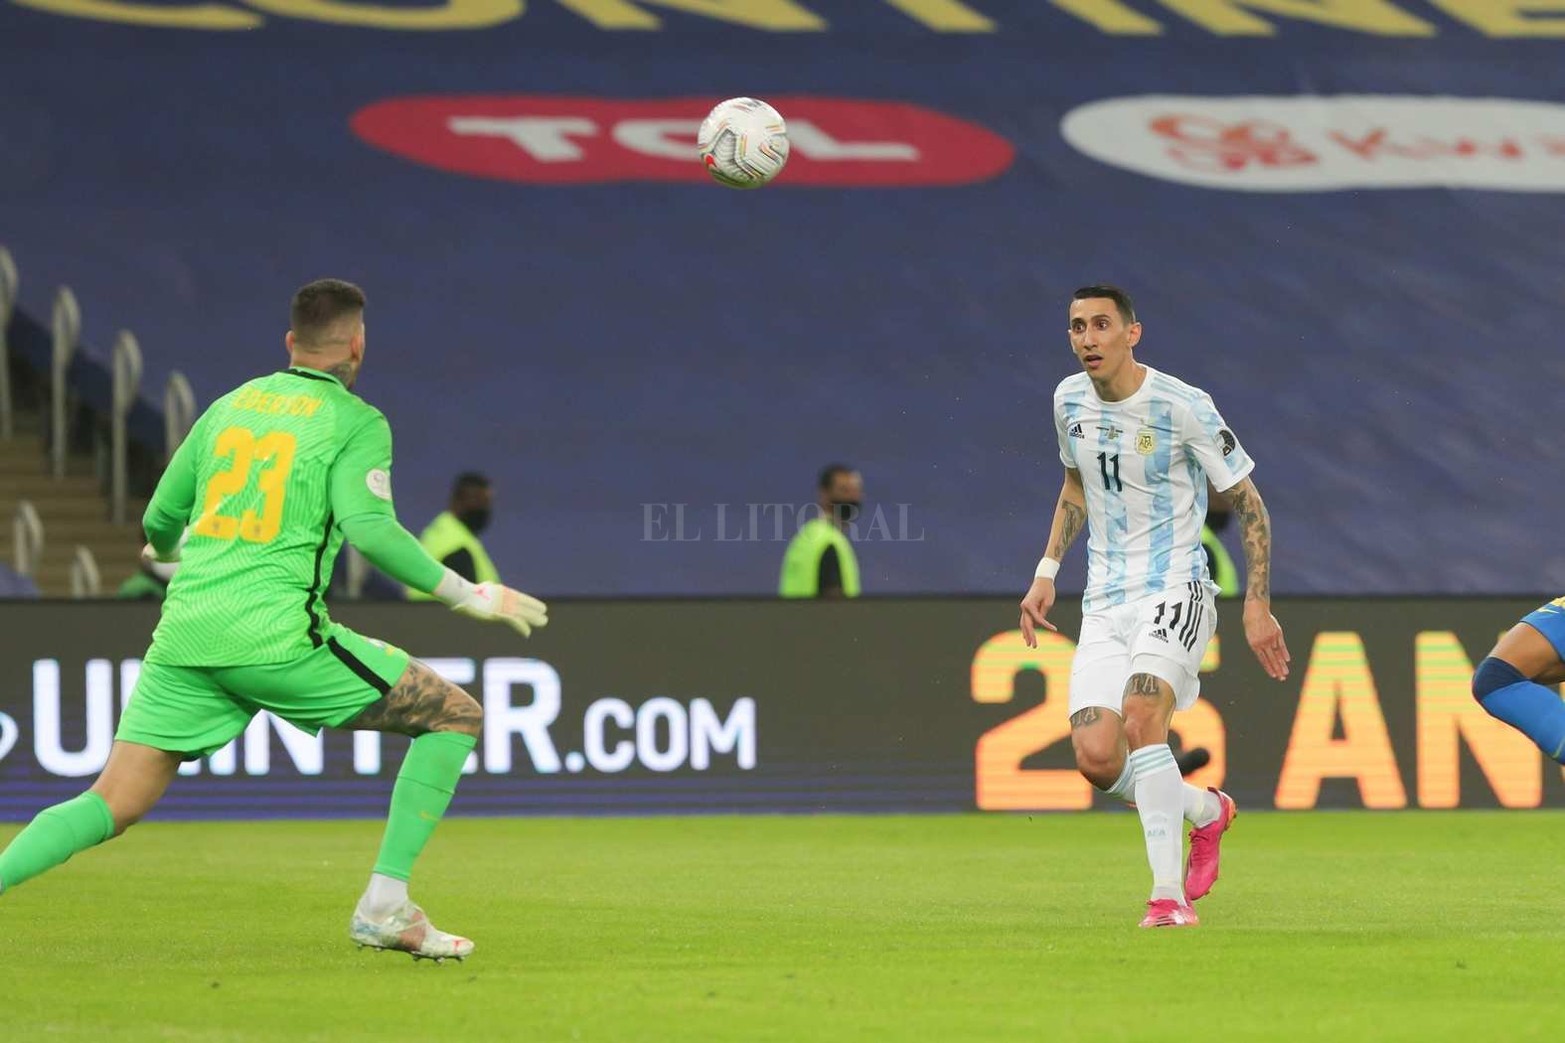 El gol de la final. Di María ya empalmó el pasé de Rodrigo Di Paul. Fue el único gol del partido que le otorgó a Argentina obtener la Copa América después de 28 años.